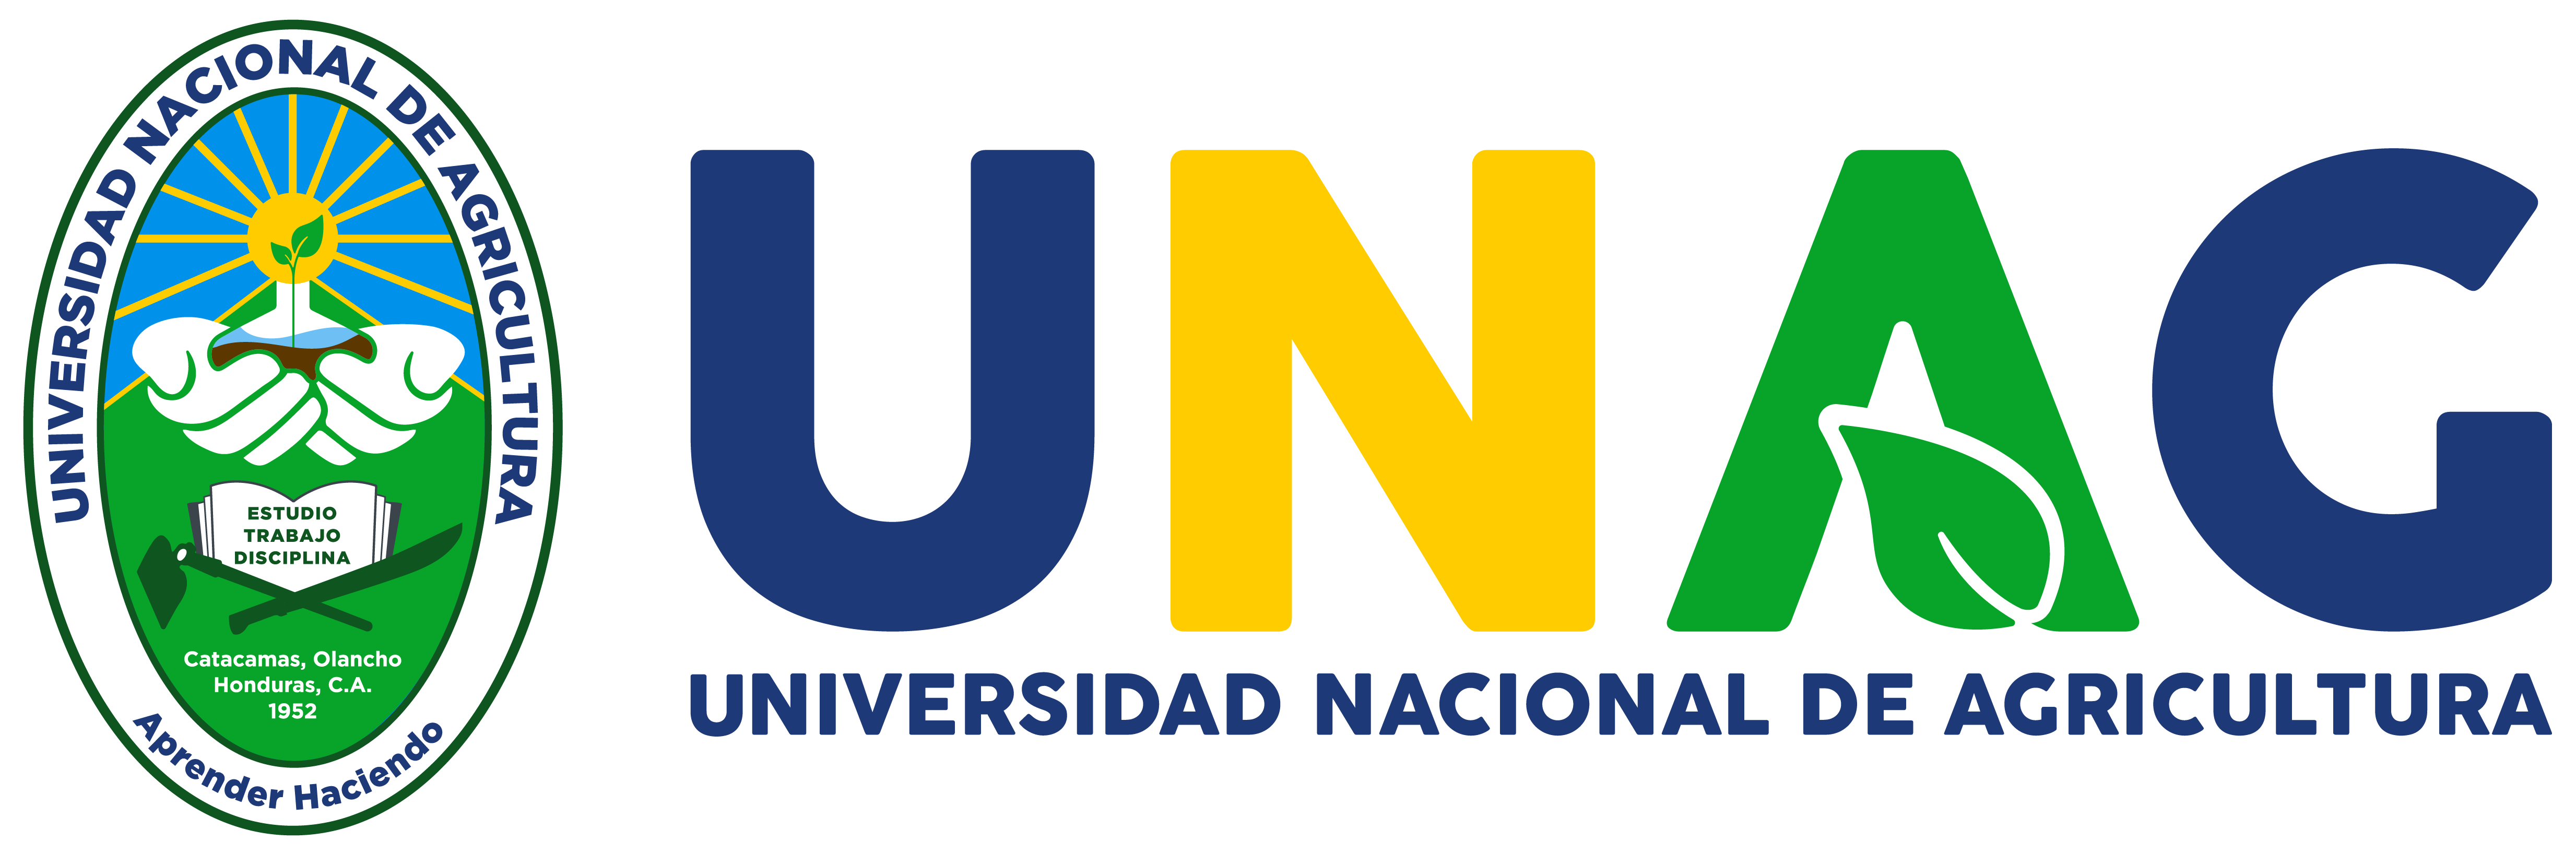 Universidad Nacional de Agricultura | UNAG